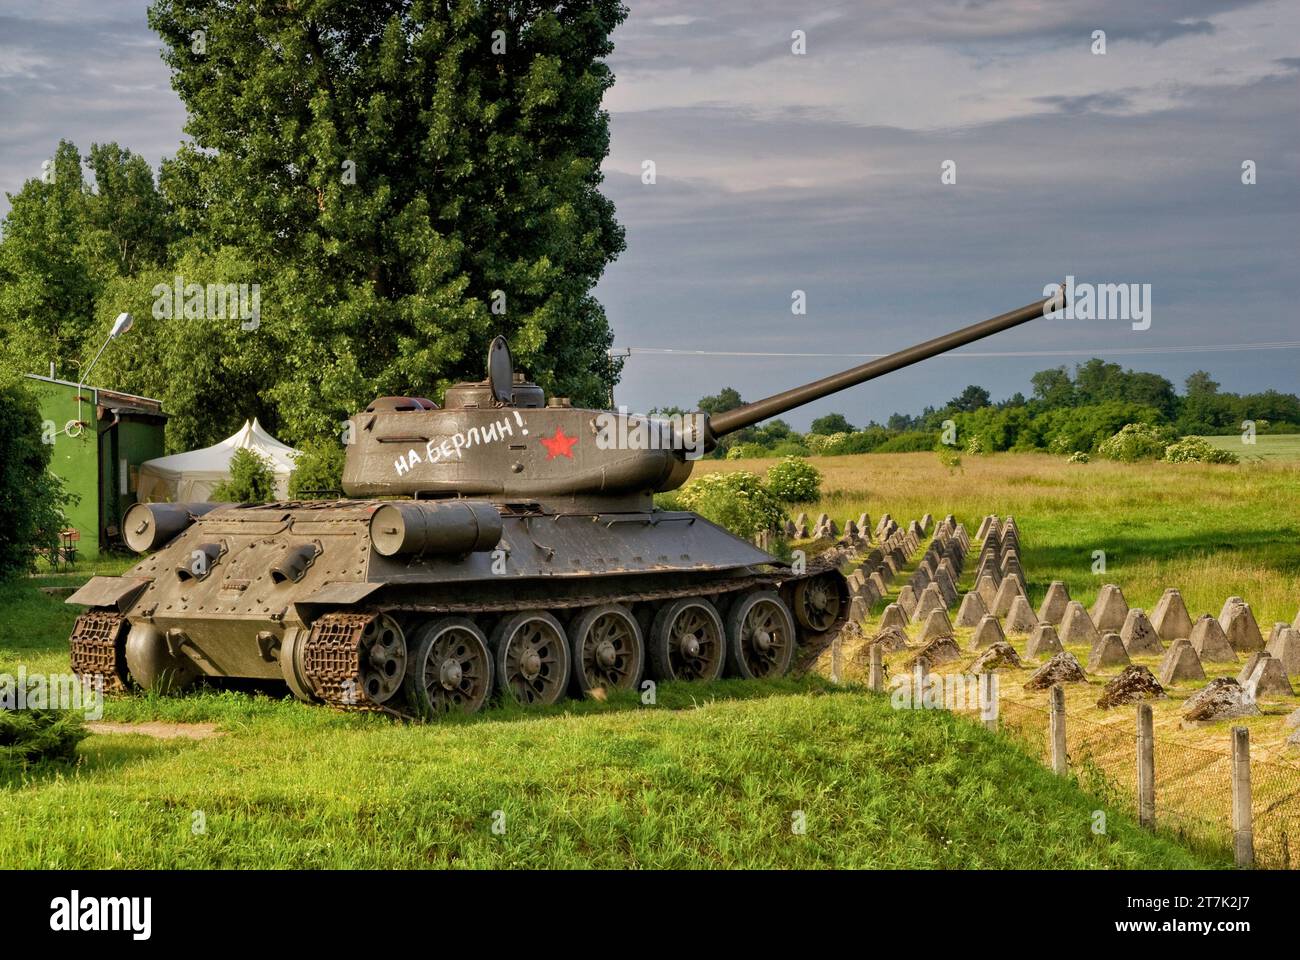 Char soviétique T-34, signe 'On to Berlin', dragons dents obstacles anti-char à Ostwall de la Seconde Guerre mondiale, Pniewy, Voïvodie de Lubuskie Pologne Banque D'Images